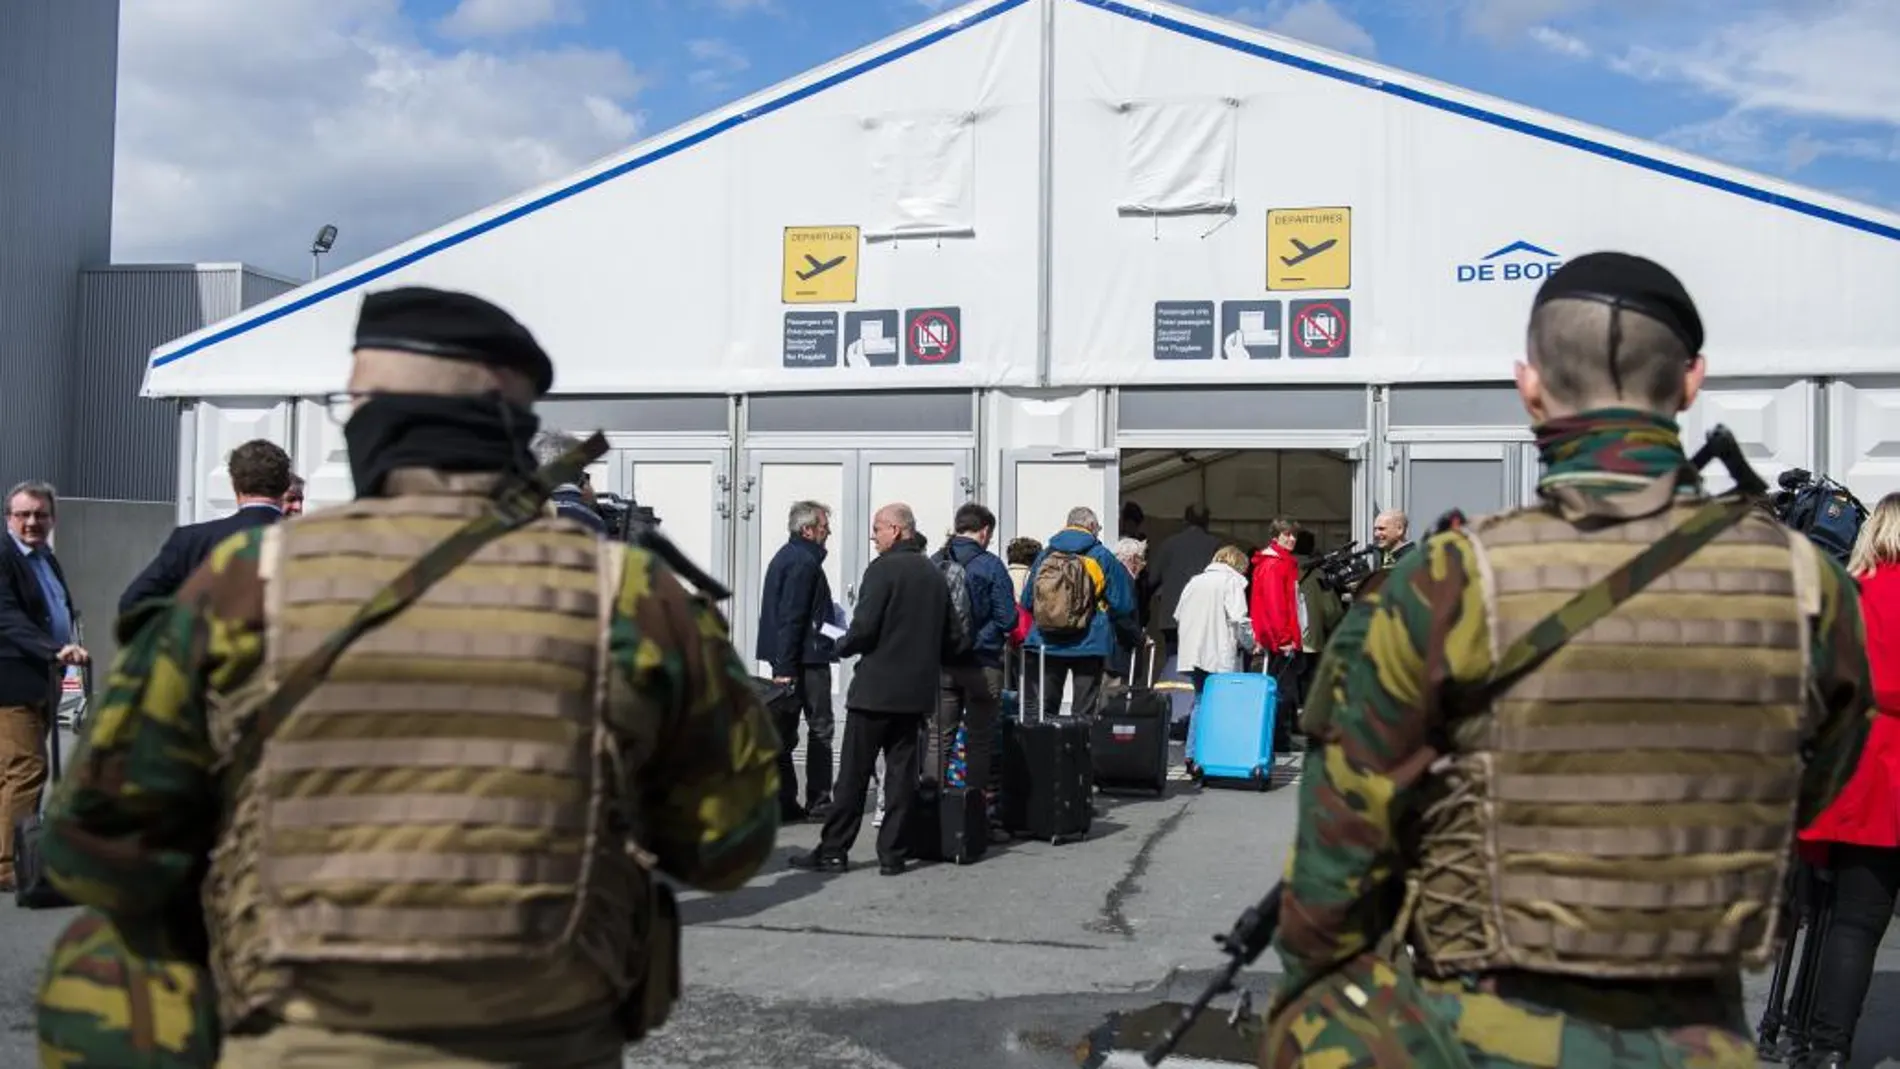 Vista de las medidas de seguridad en las inmediaciones del aeropuerto de Zaventem, cerca de Bruselas